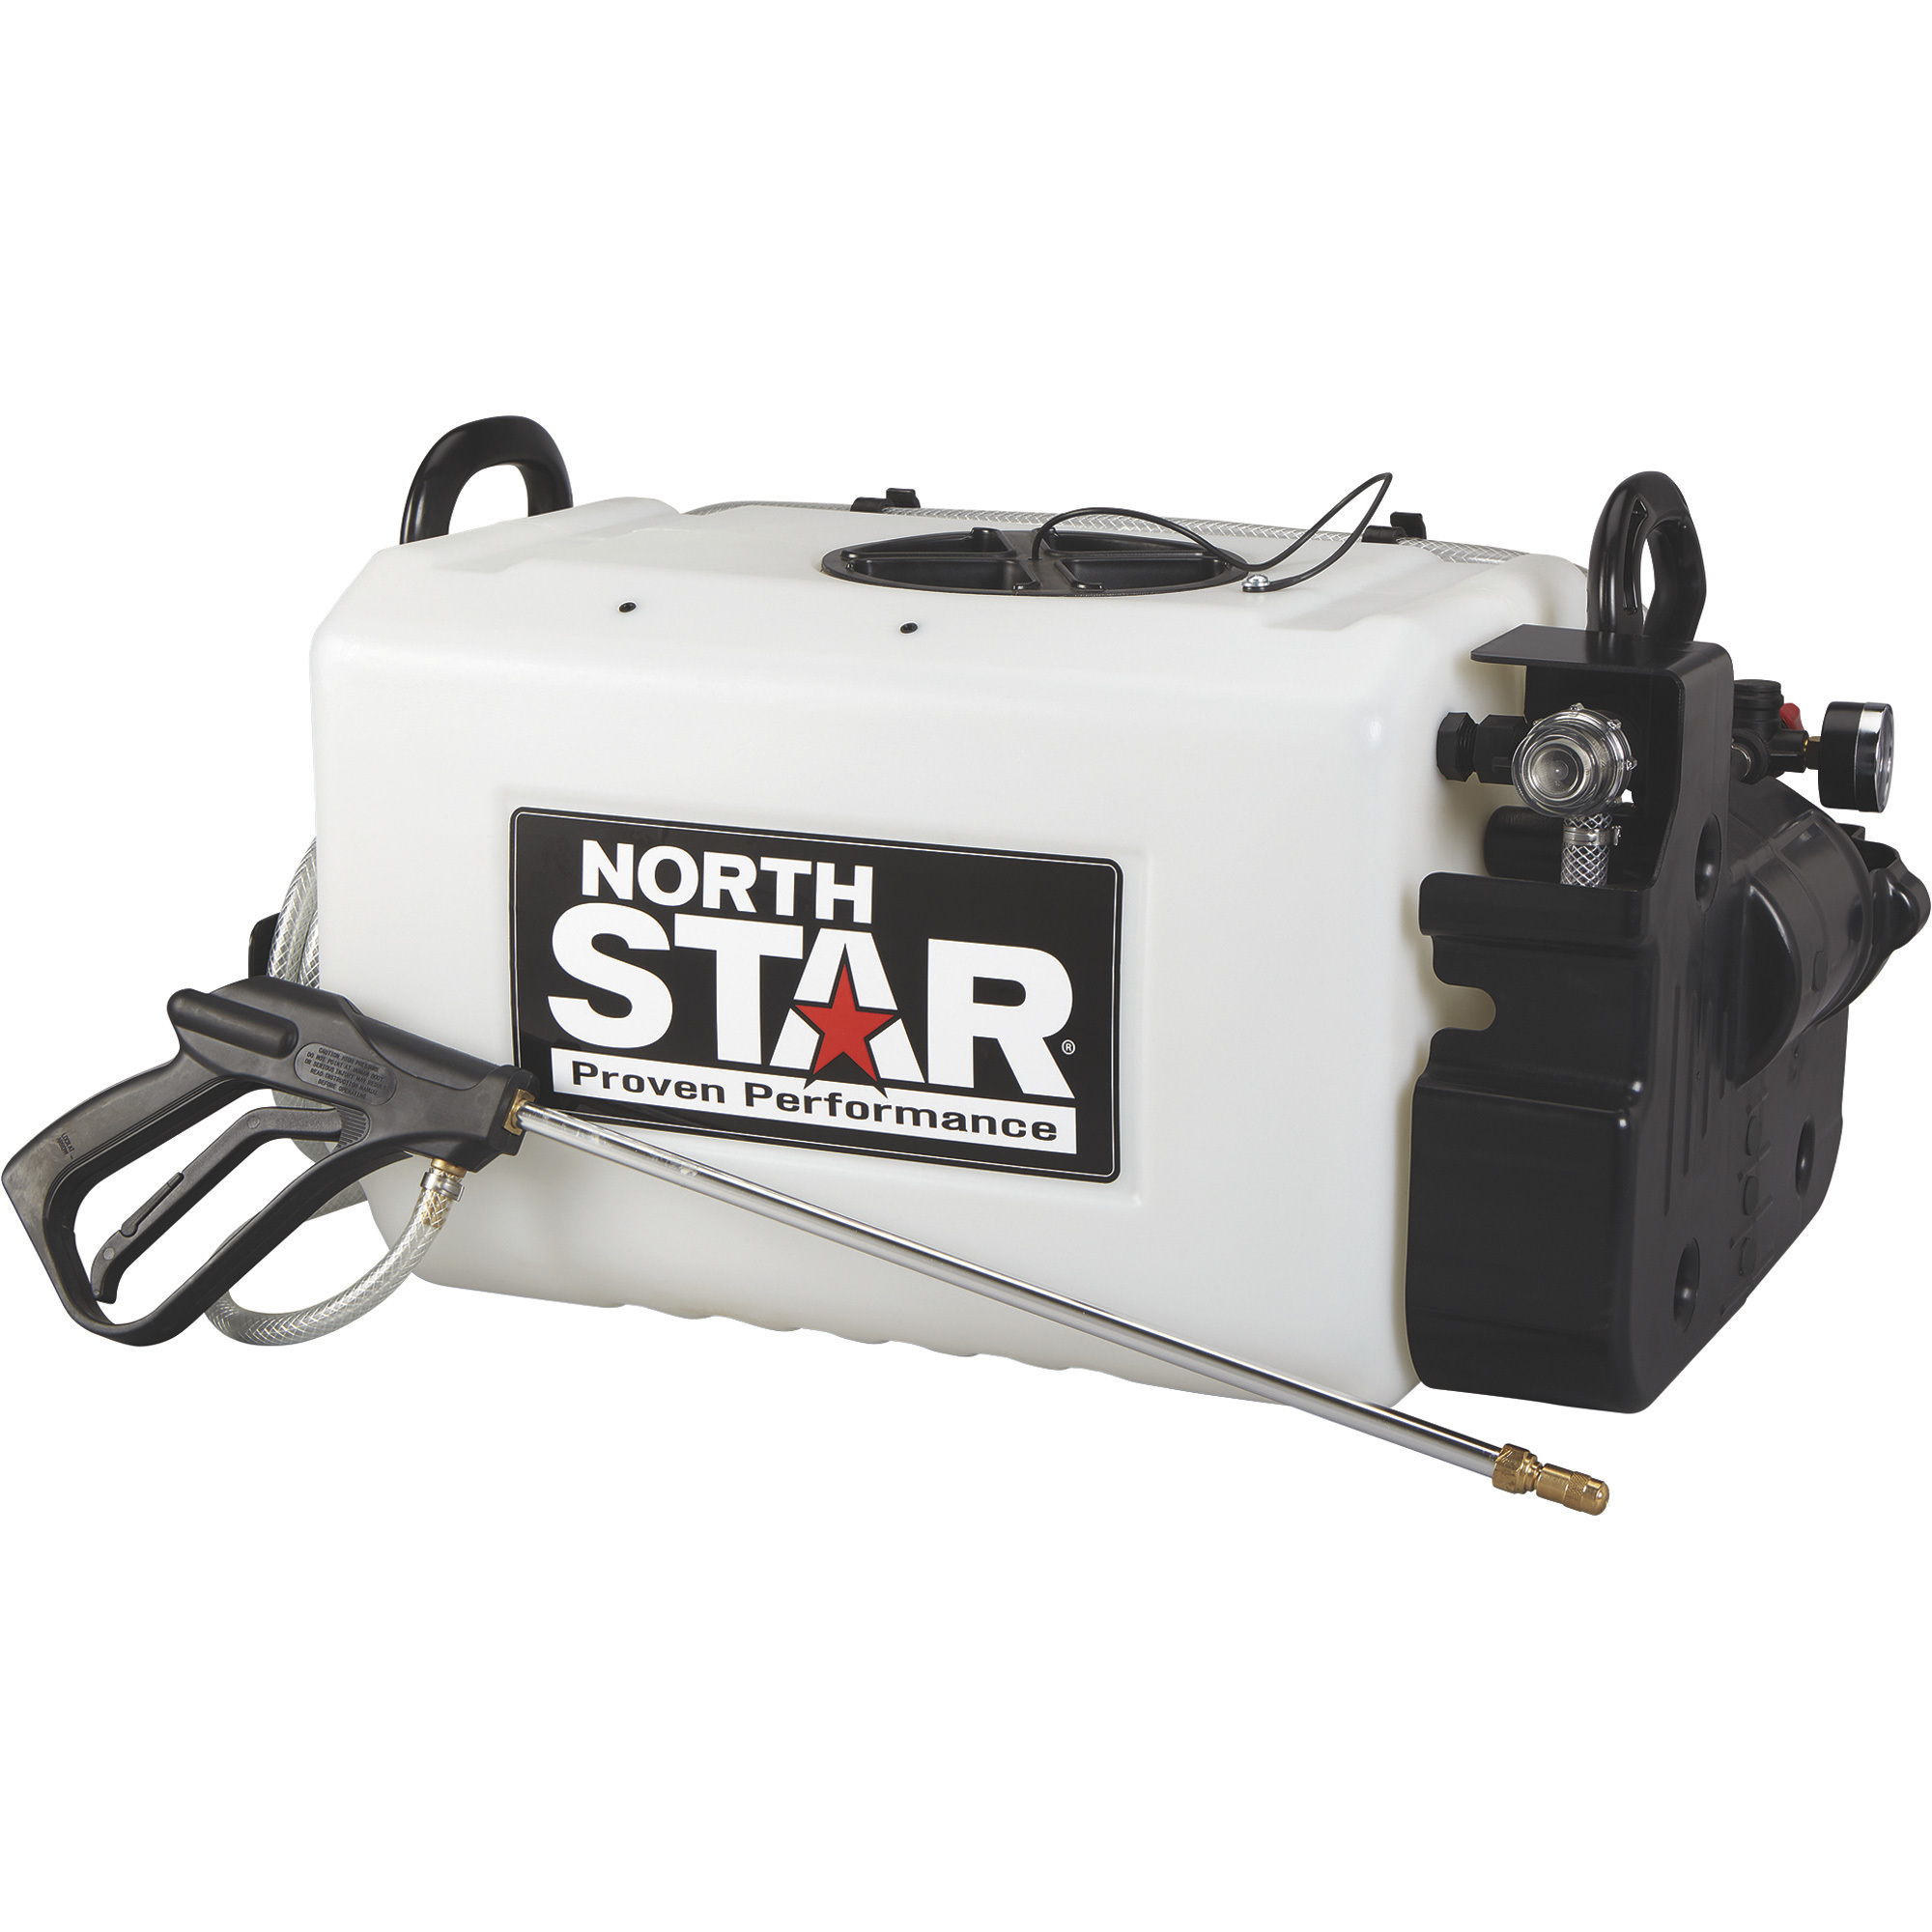 NorthStar ATV Spot Sprayer â 16-Gallon Capacity, 2.2 GPM, 12 Volt